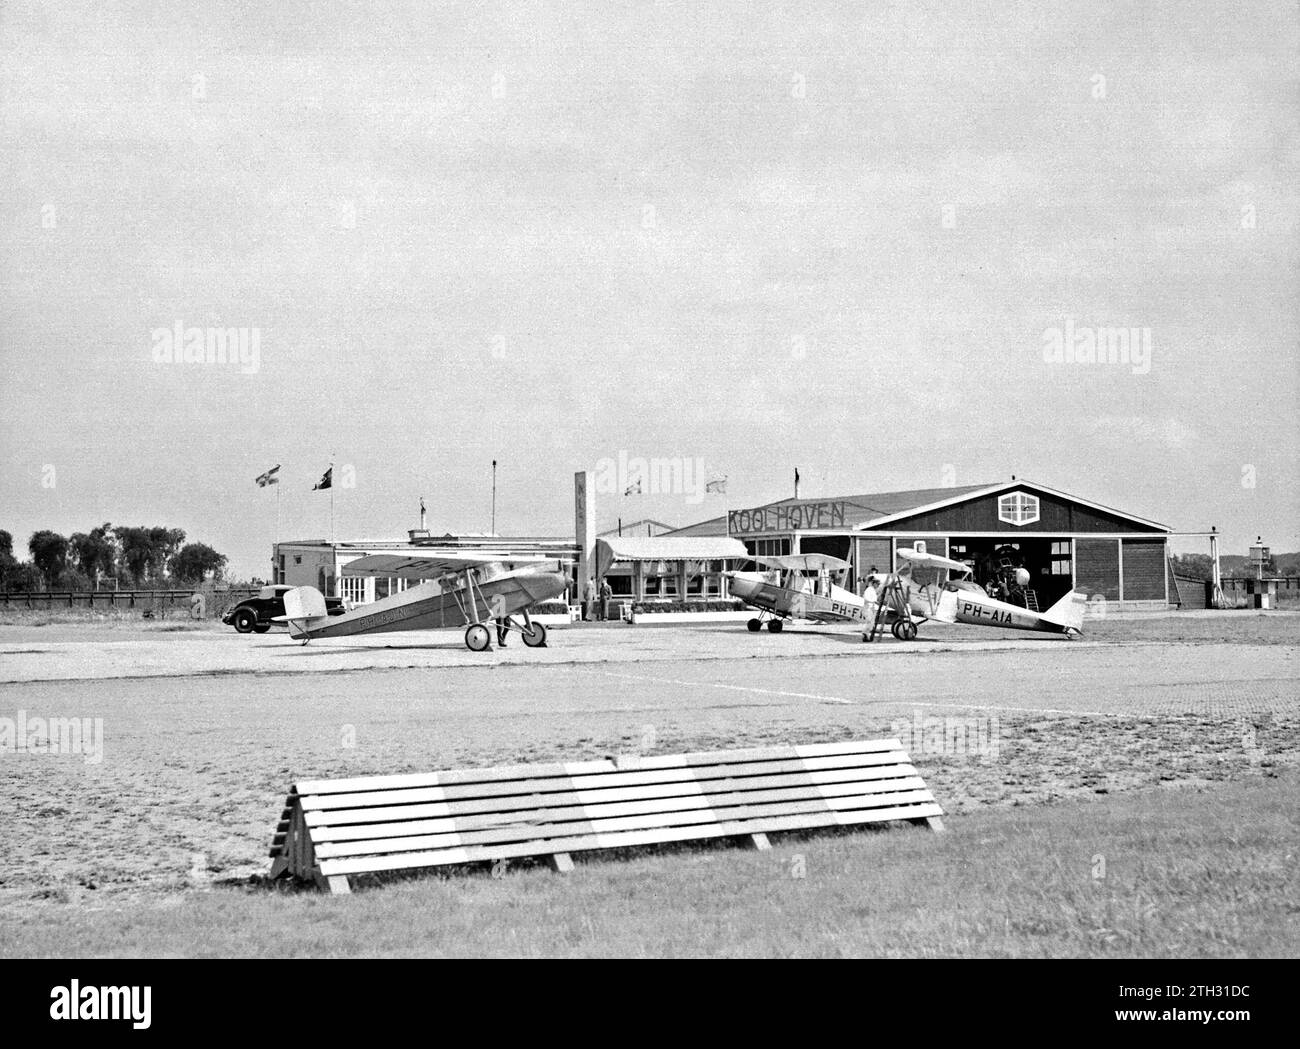 Der Flughafen Rotterdam Waalhaven mit dem Clubhaus der Niederländischen Luftfahrtschule neben der Flugzeugfabrik Koolhoven. Von links nach rechts: Ein Koolhoven FK-41 (PH-AJN), ein Koolhoven FK-46 (PH-FKB) und ein Pander EF-85 (PH-AIA) ca. 1935 Stockfoto